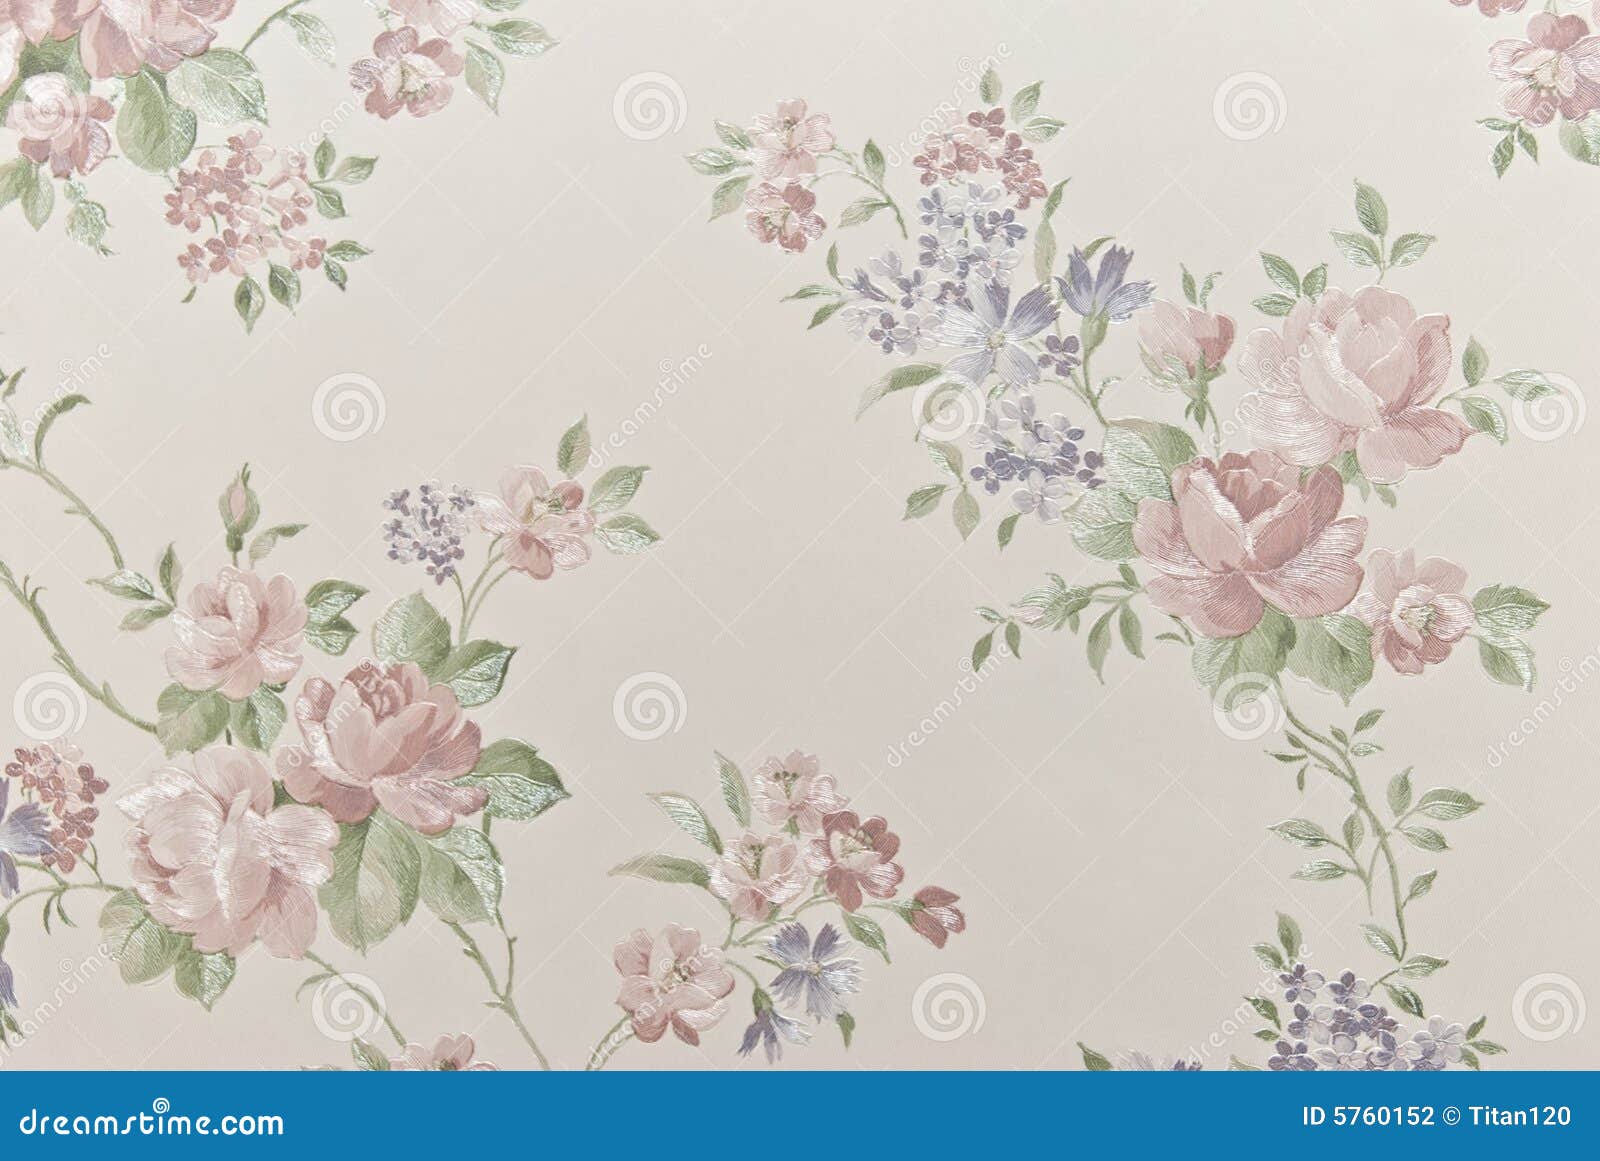 Many Flower Wallpaper, For Home